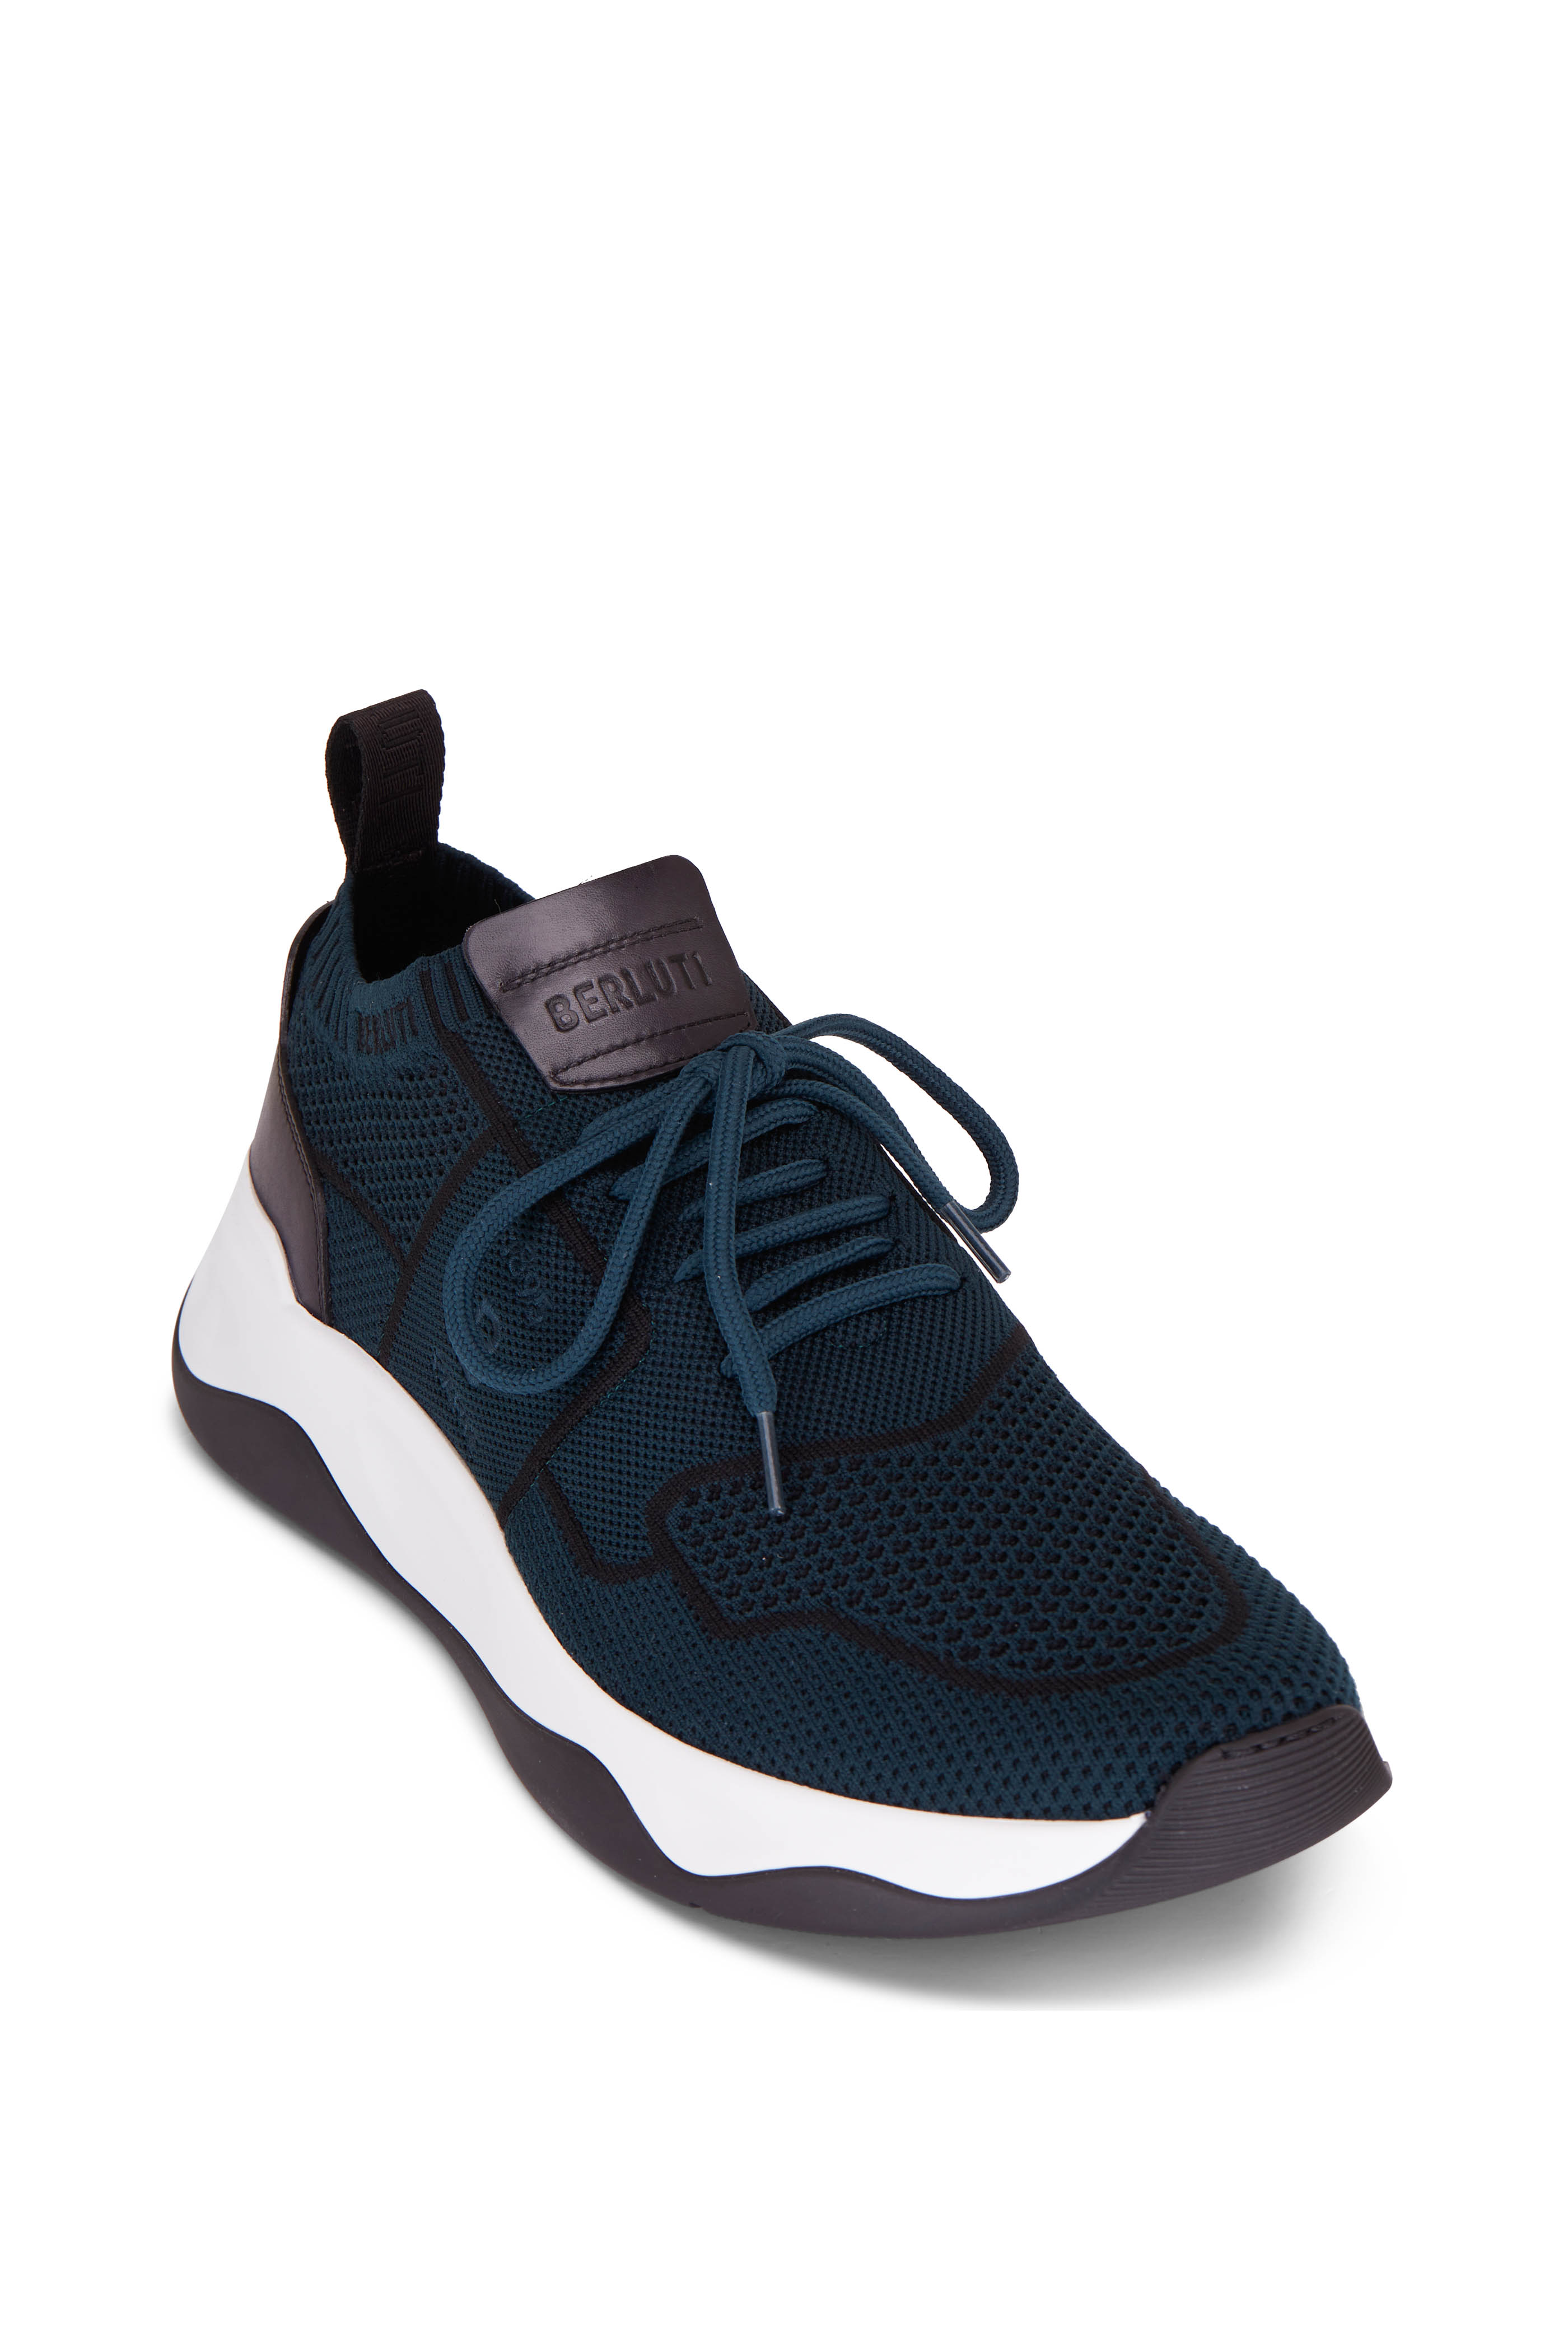 Berluti - Men - Fast Track Perforated Nubuck Sneakers Brown - UK 10.5